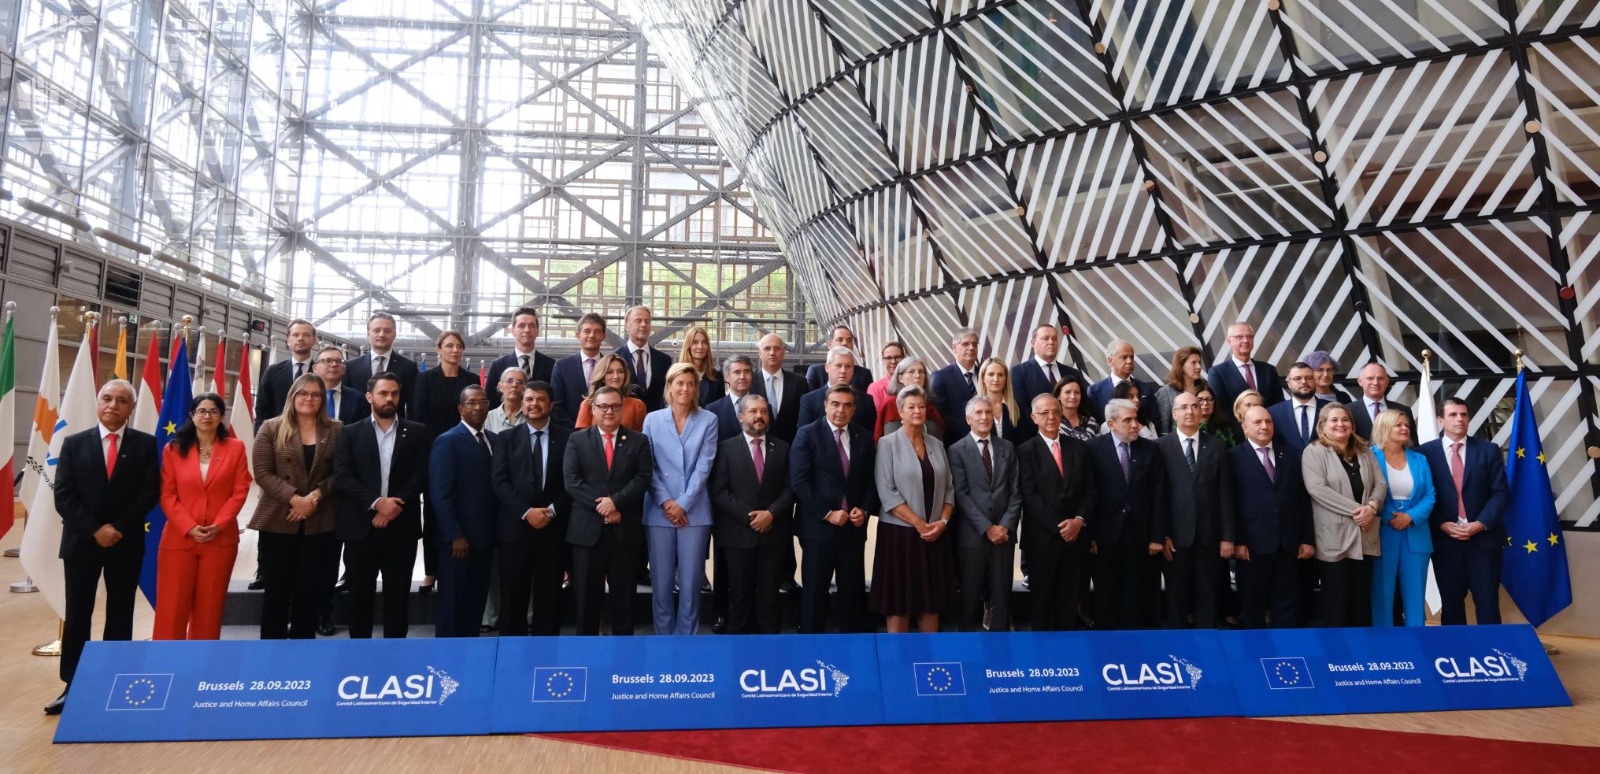 Foto de familia de la reunión del CLASI en Bruselas